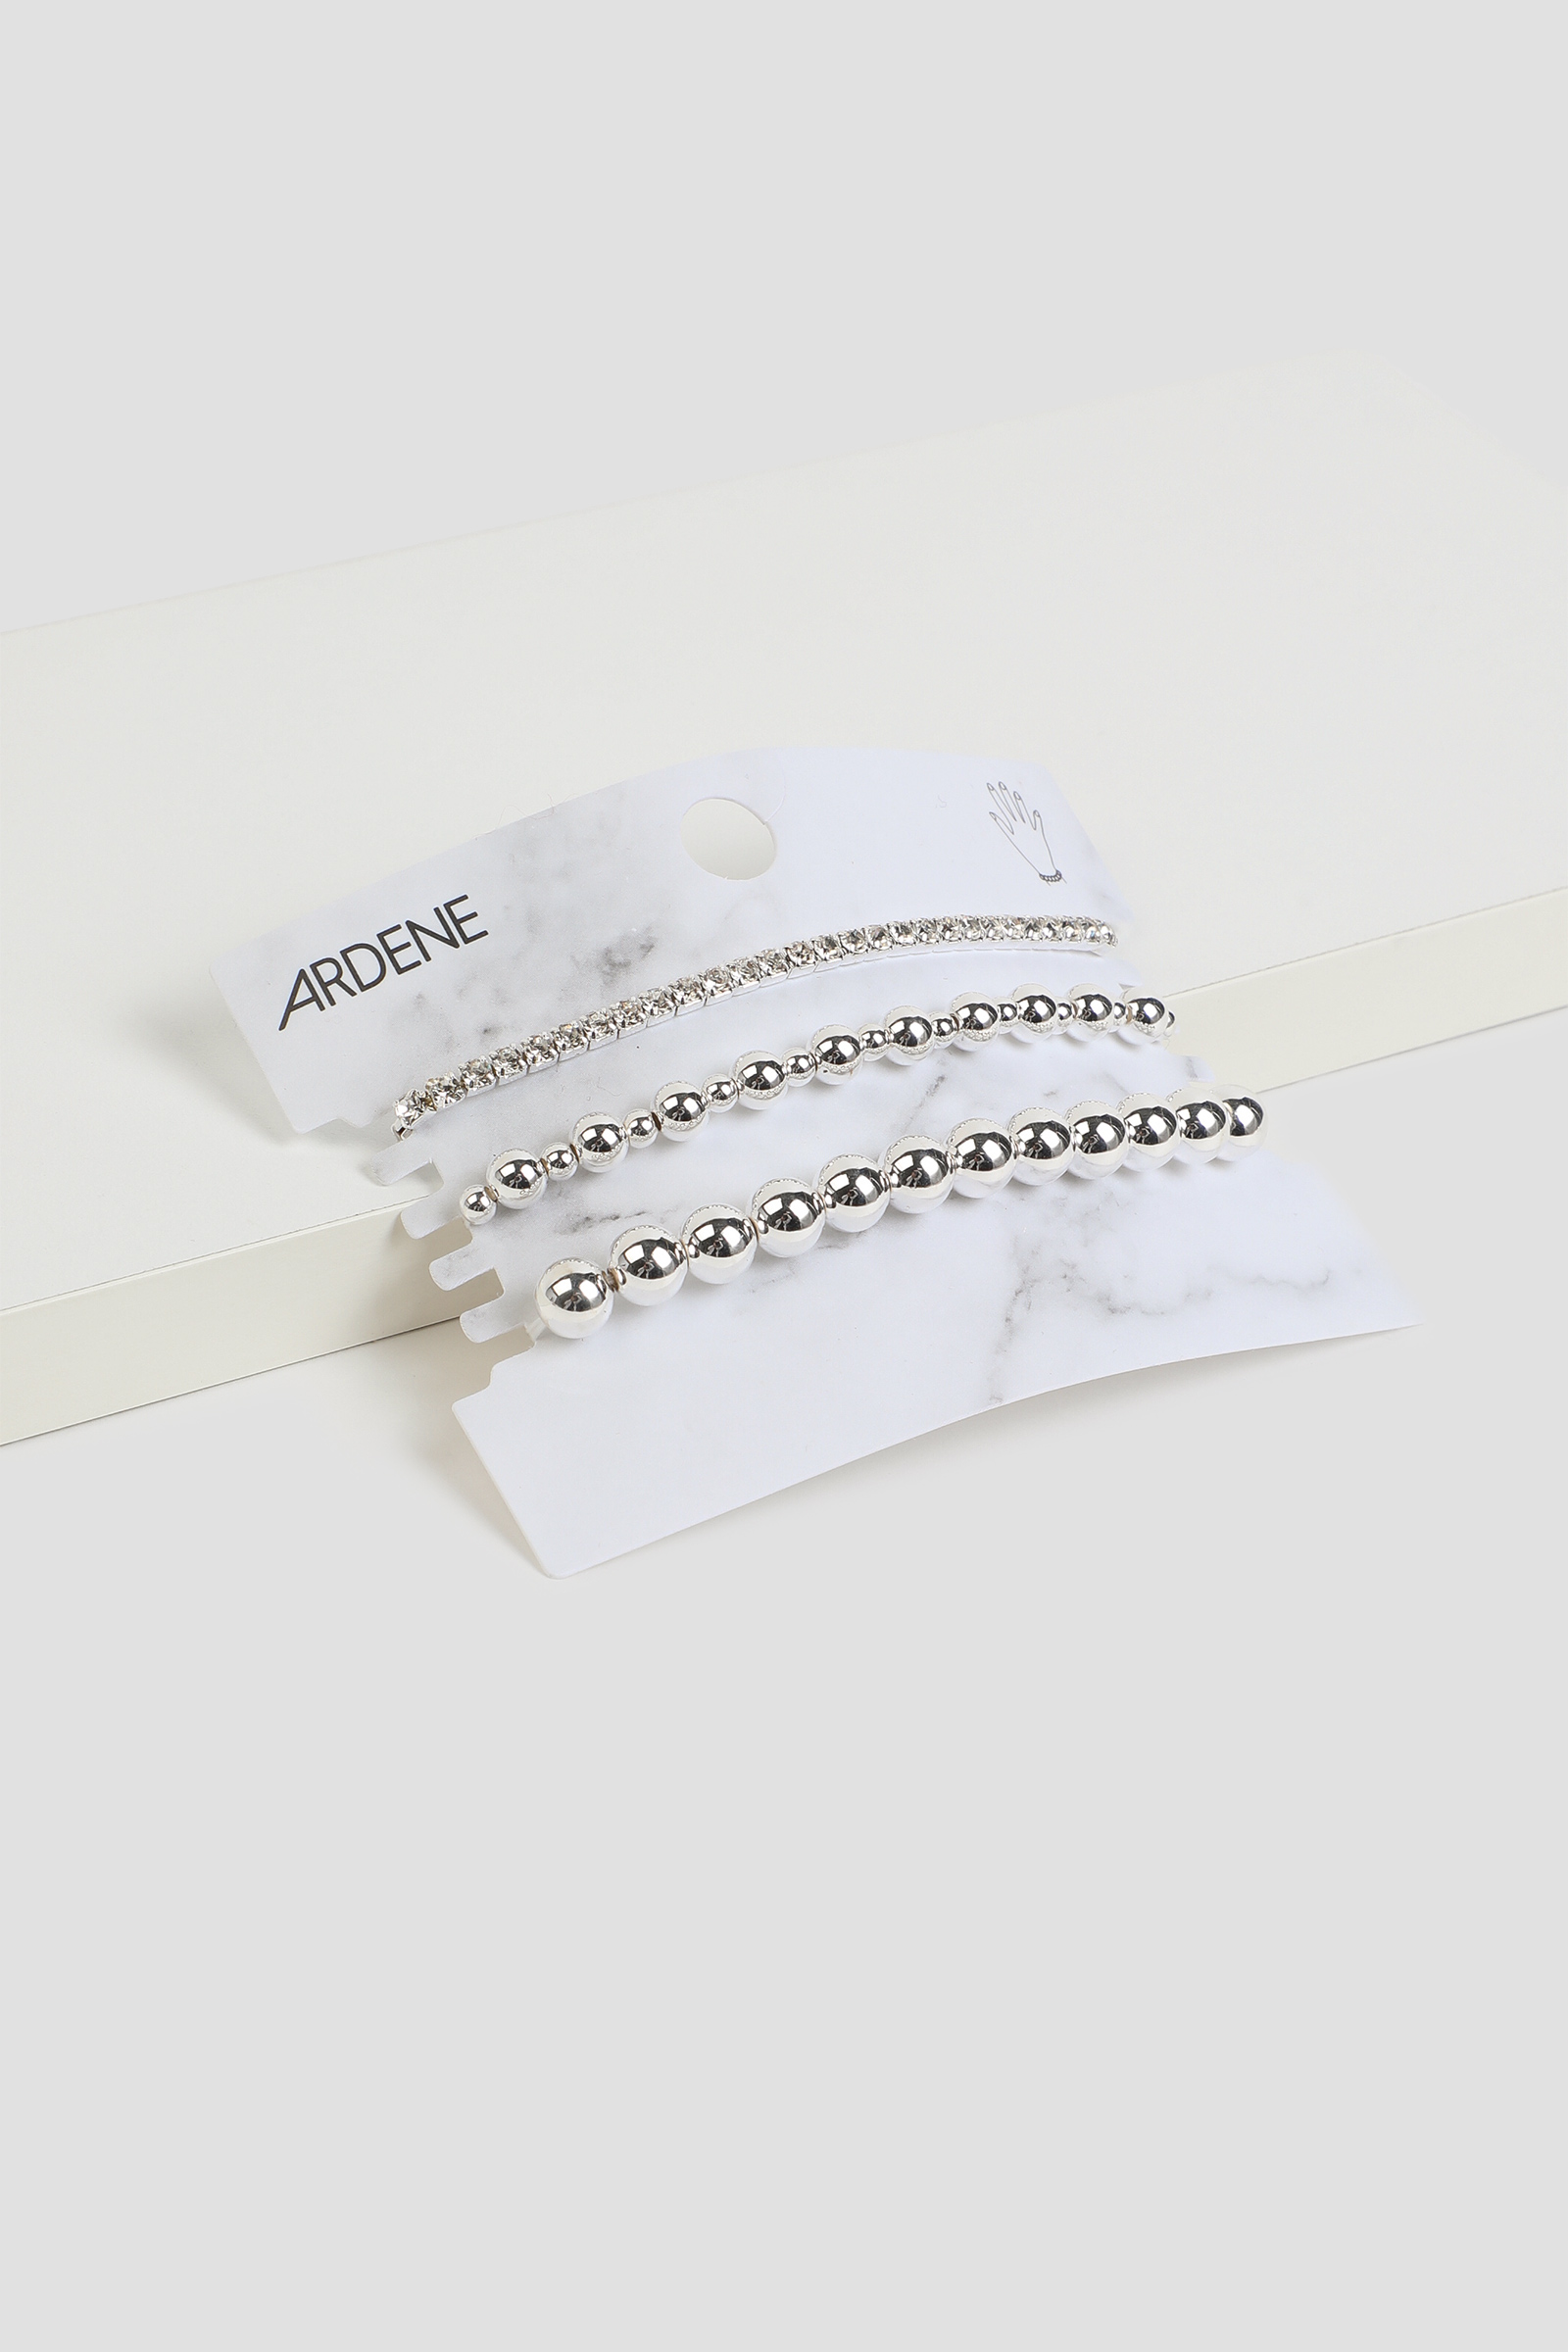 Ardene 3-Pack Stretch Bead Bracelets in Silver